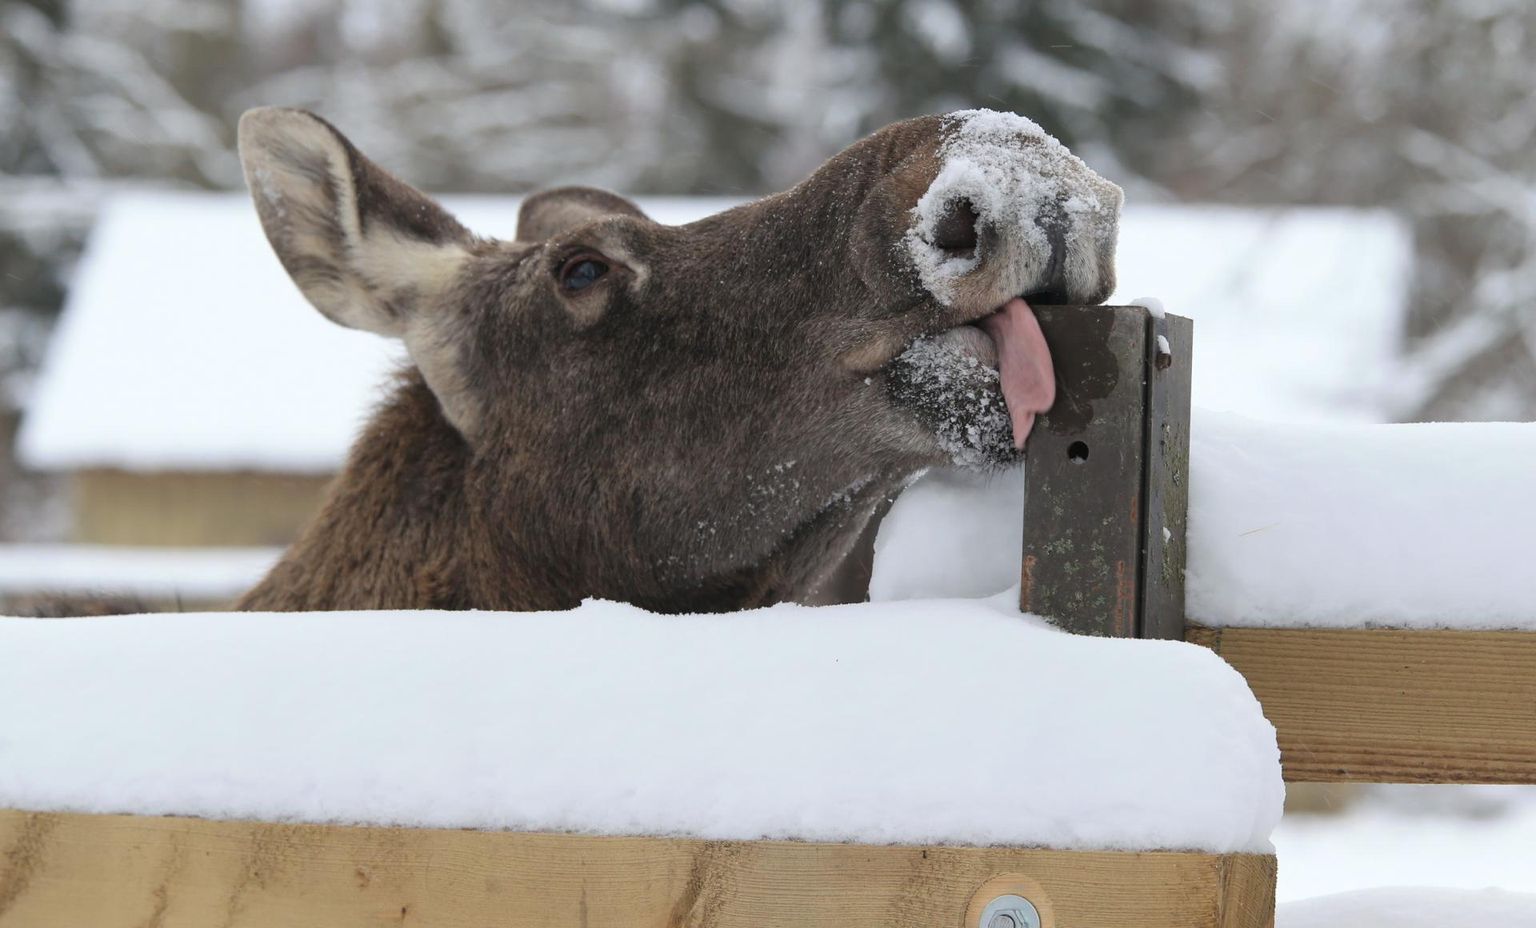 Lumise koonuga põder Tuule tervitas loomapargis uudistajaid laulujoruga ja limpsas sõbralikult keelega.